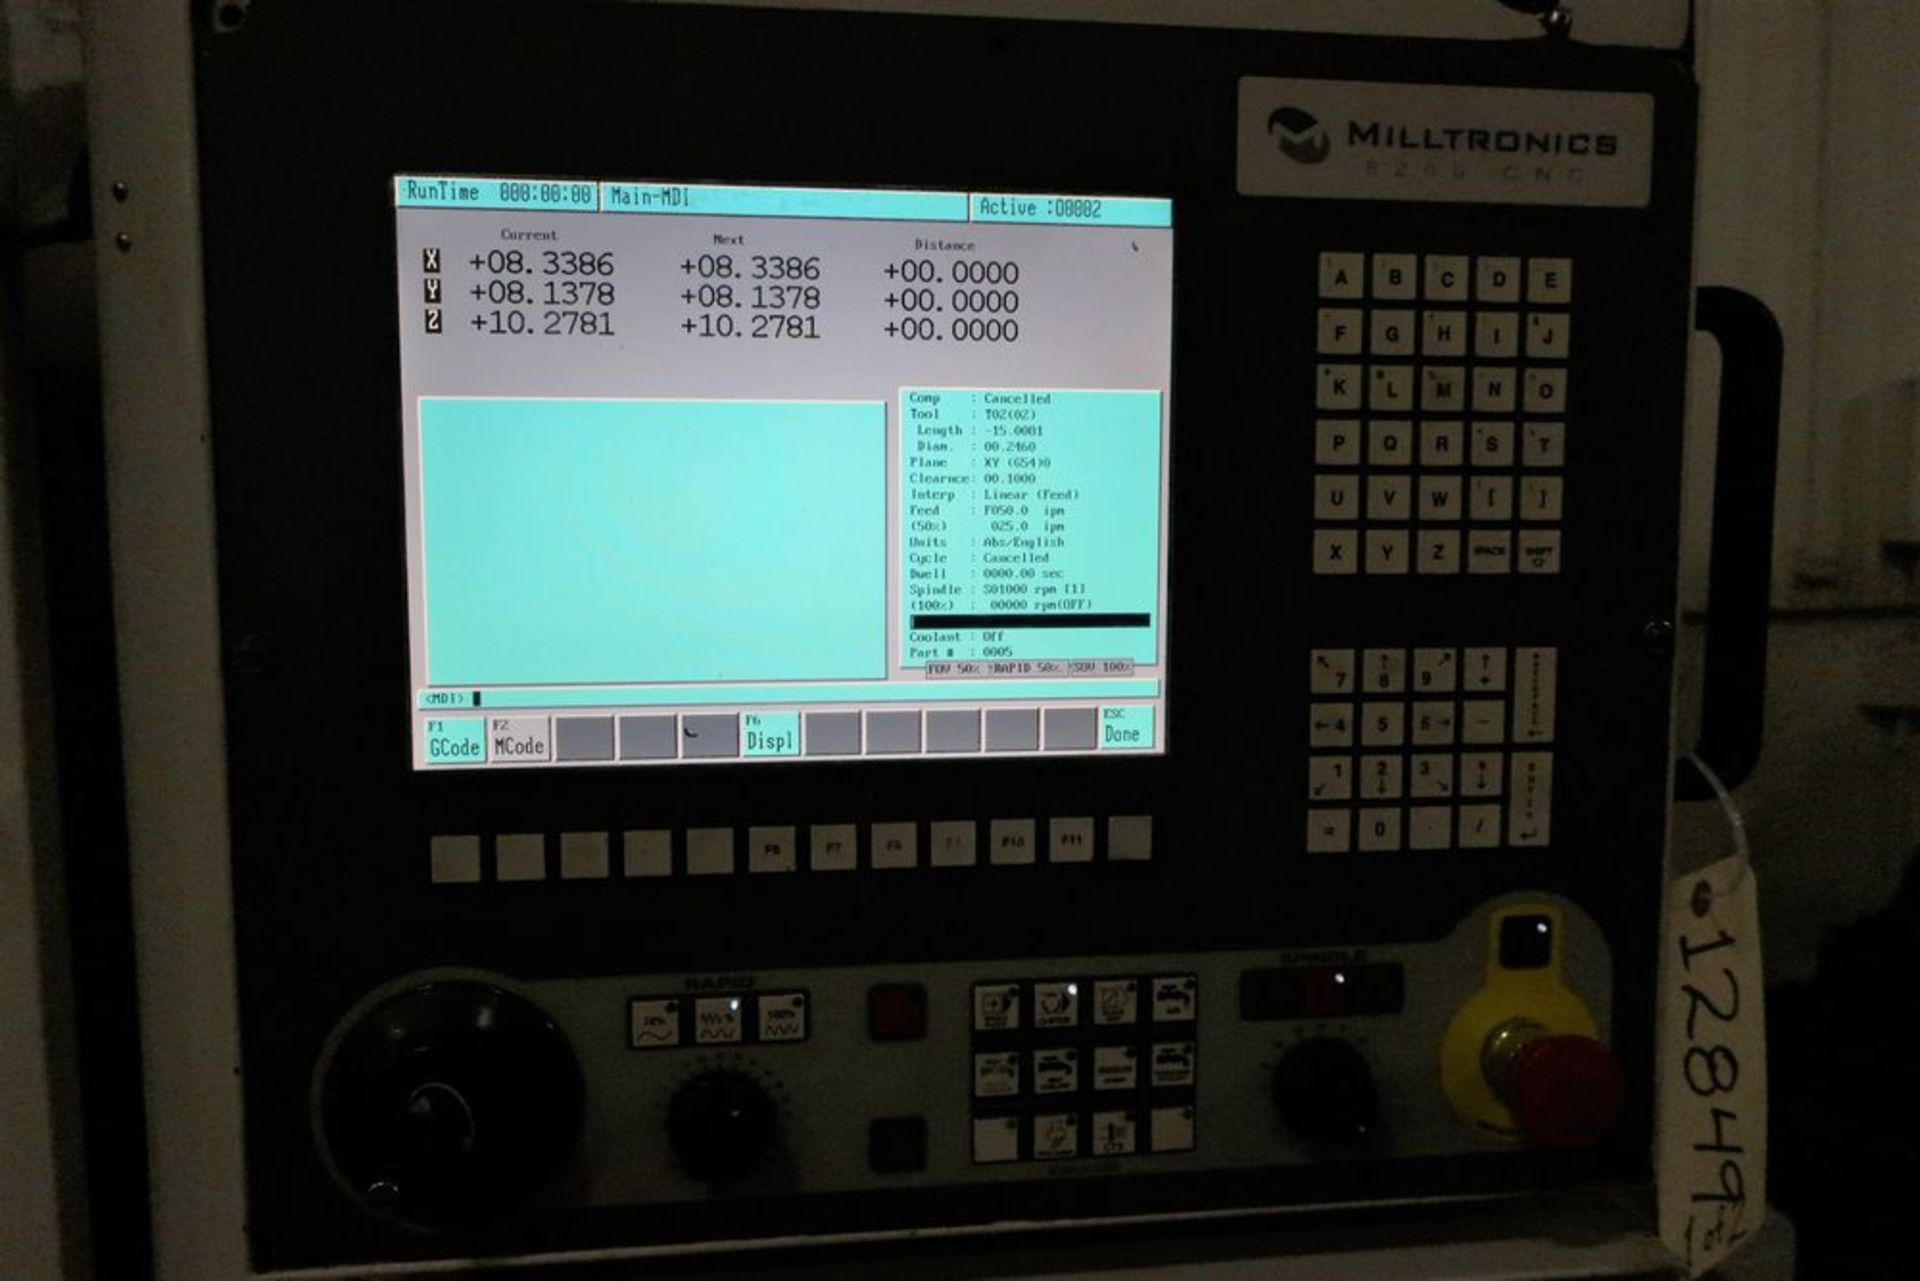 MILLTRONICS TT24 3-AXIS CNC VERTICAL MACHINING CENTER W/PALLET CHANGER, S/N 11964, NEW 2012 - Image 2 of 9